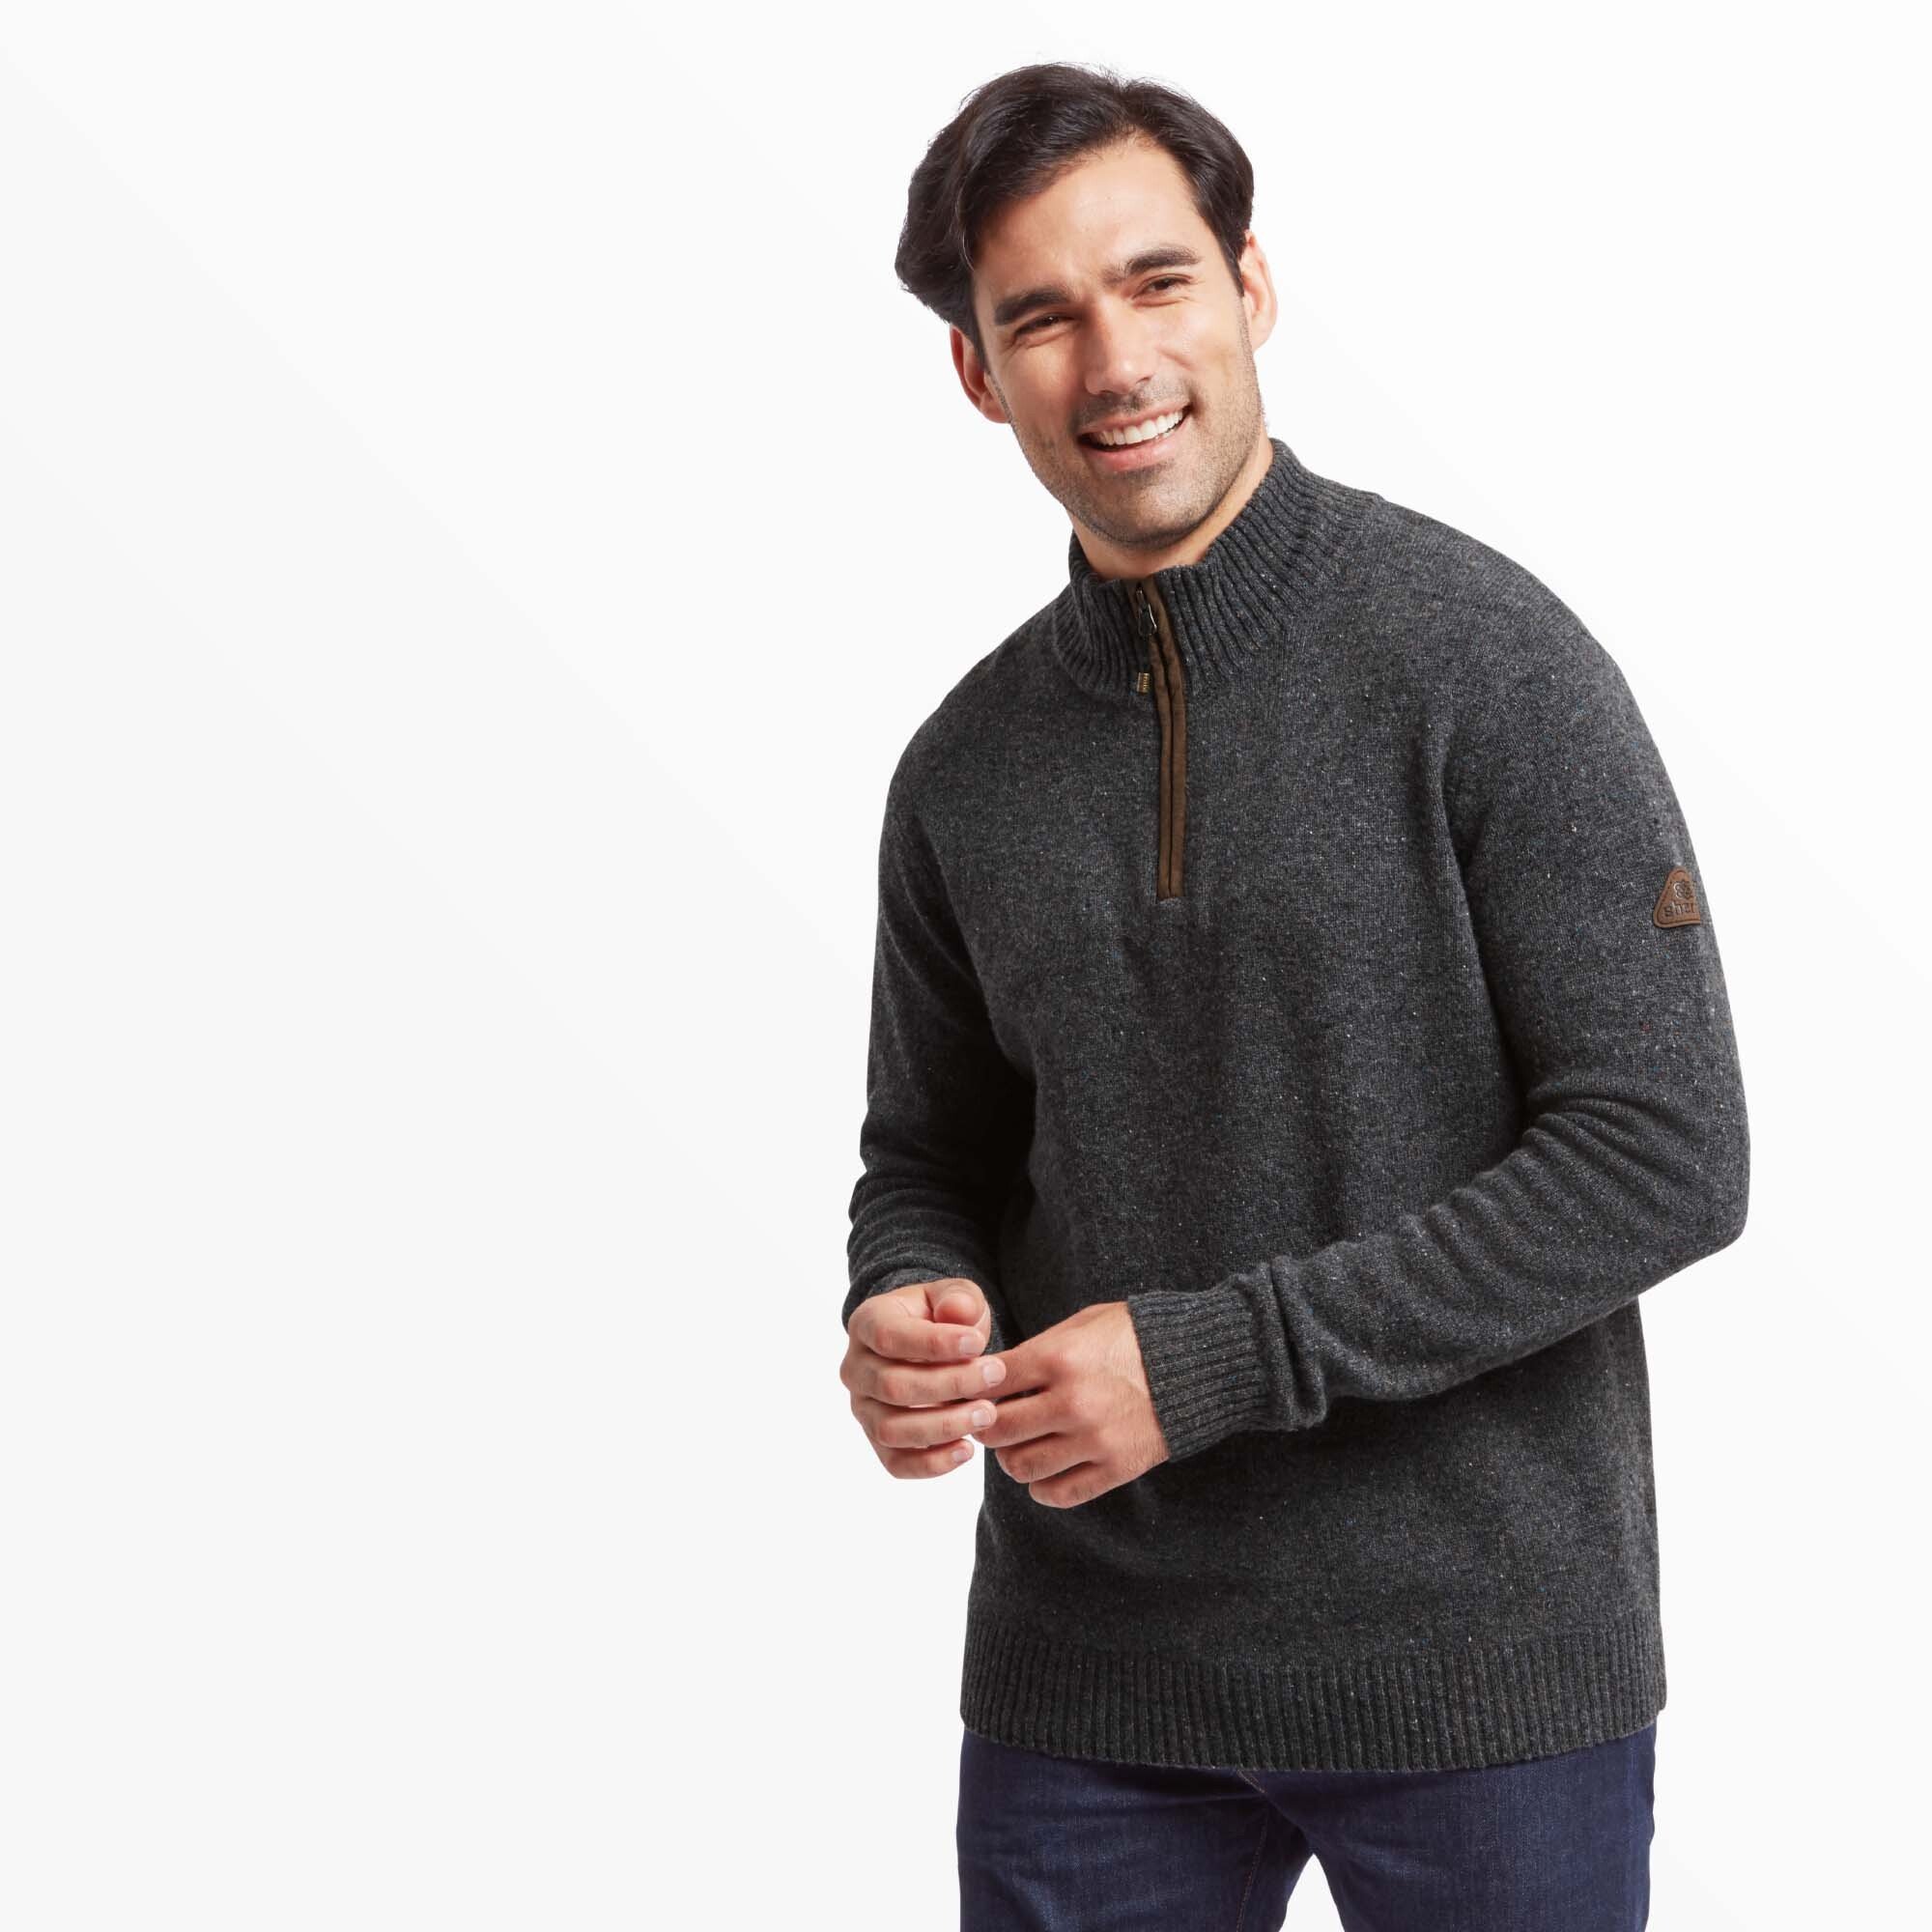 Kangtega Quarter Zip Sweater| Ethical & Sustainable Clothing | Sherpa ...